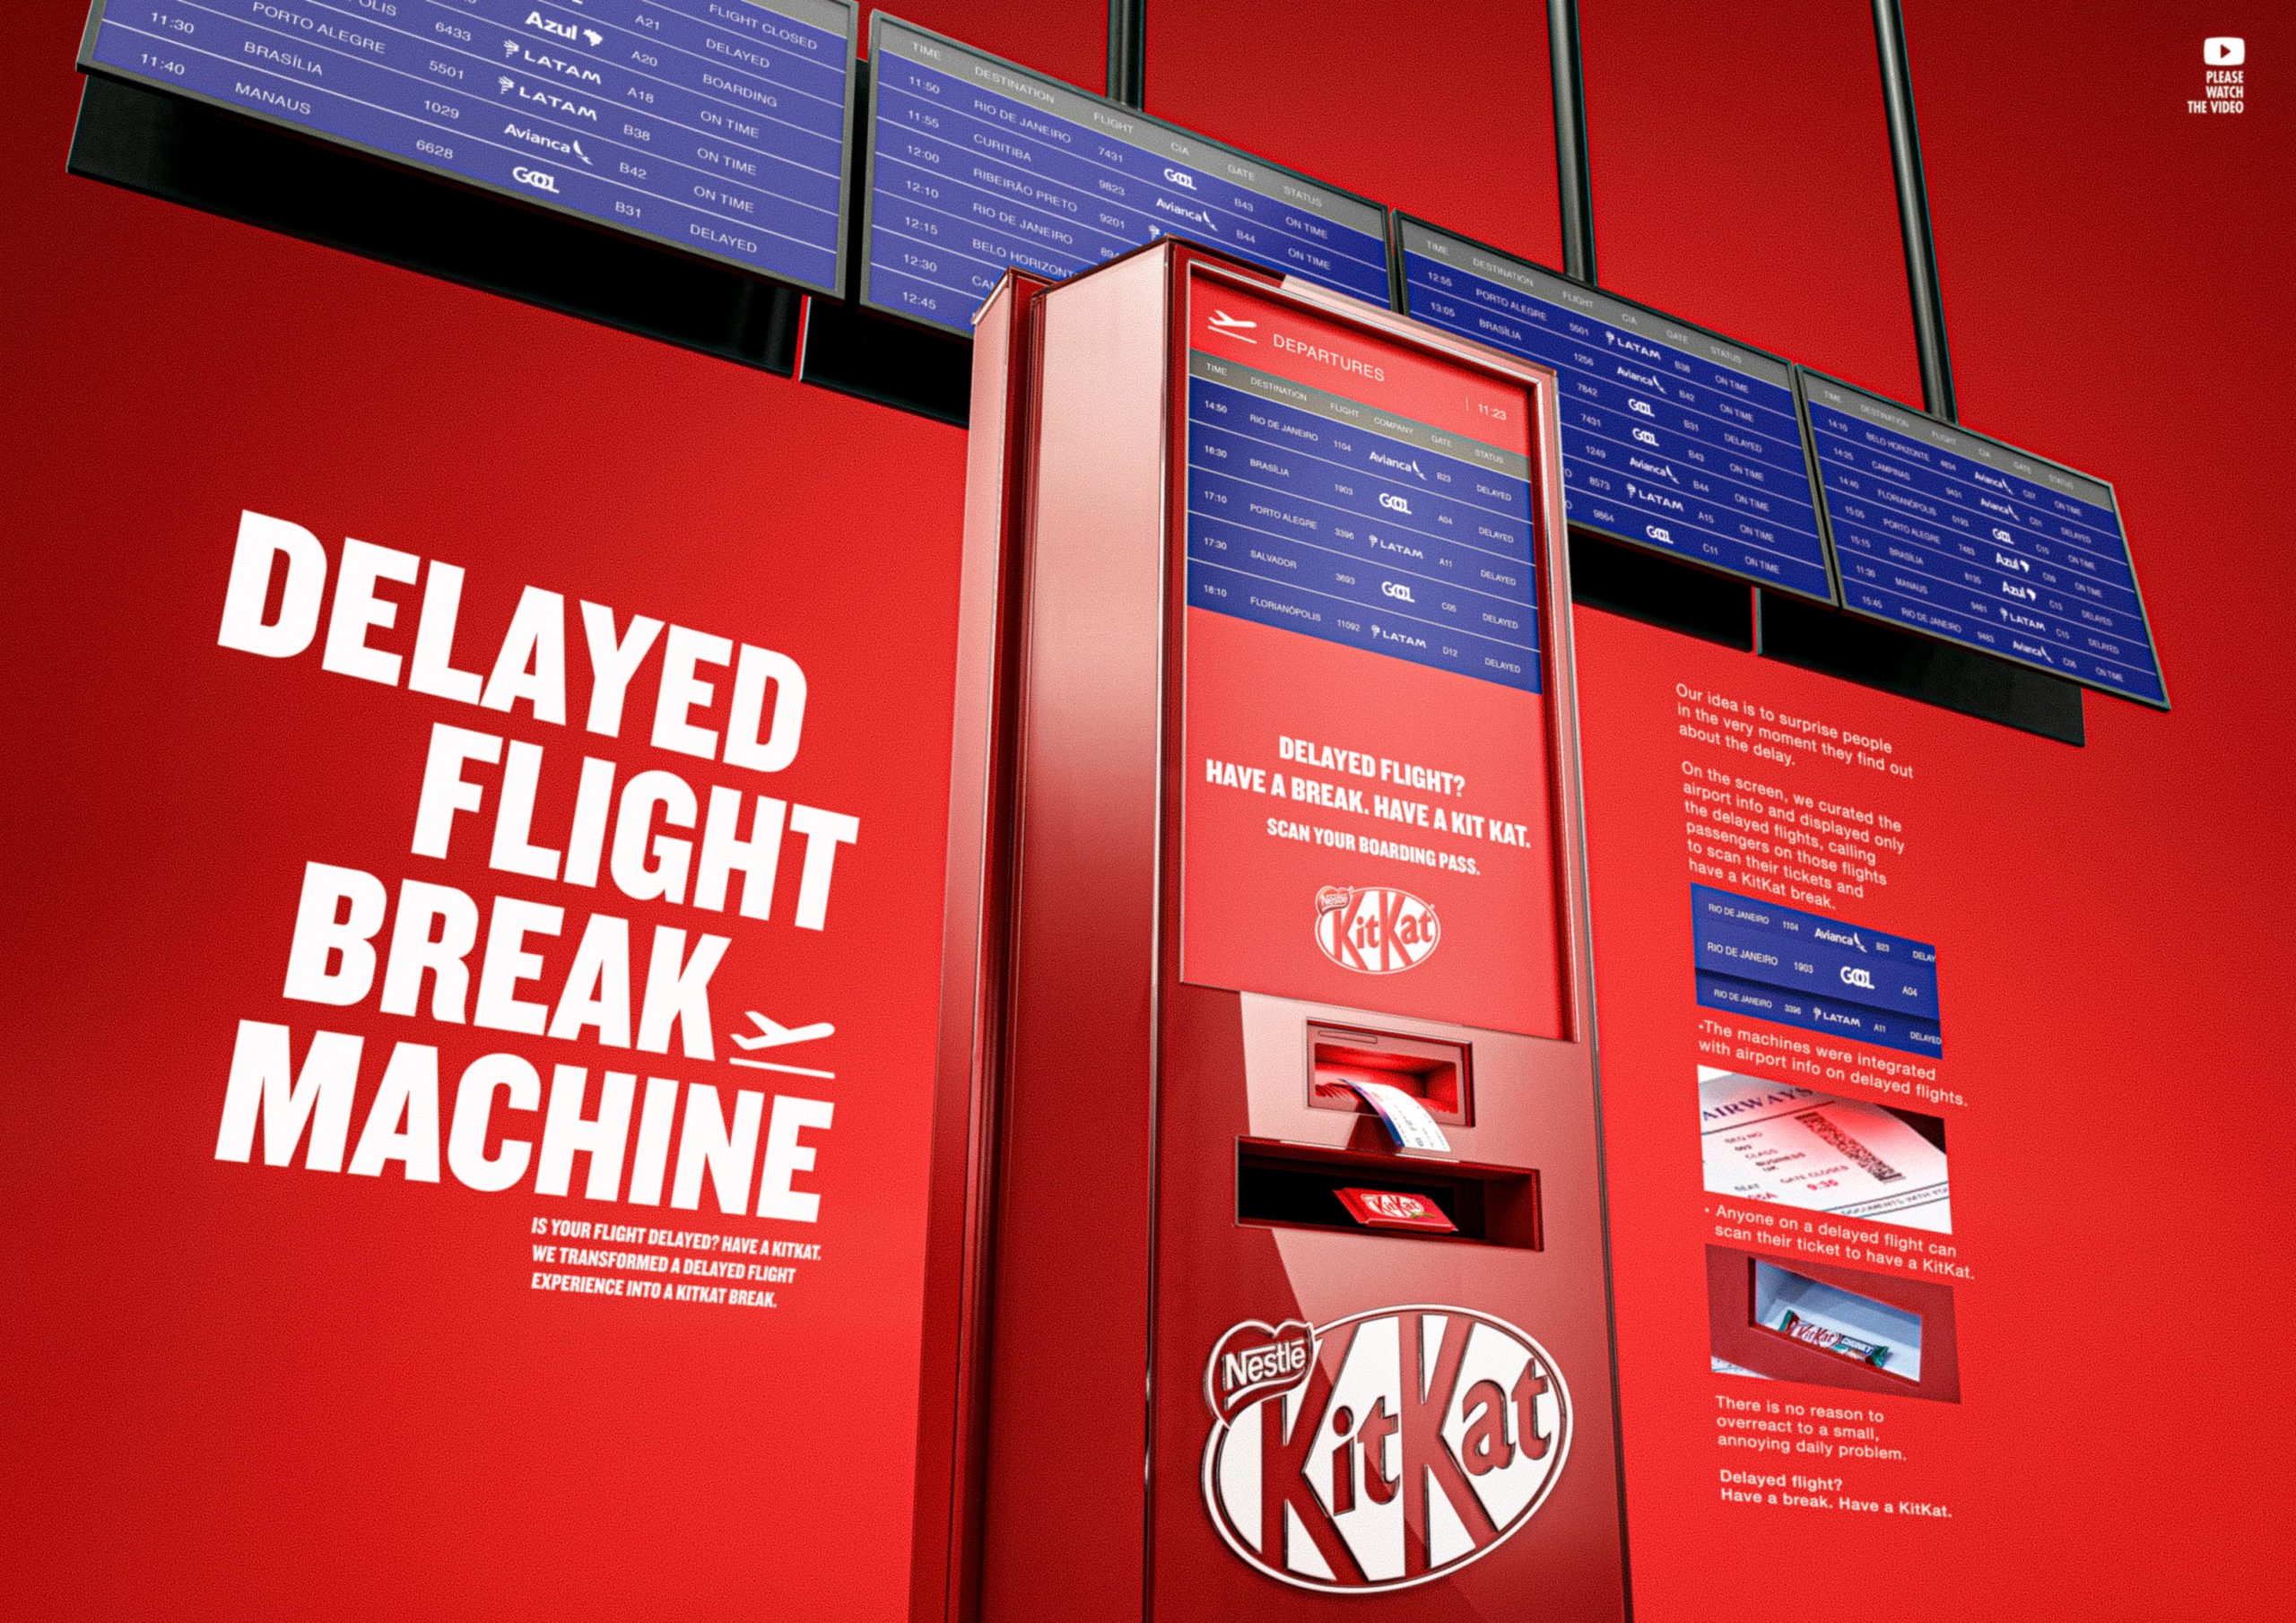 delayed_flight_break_machine-1